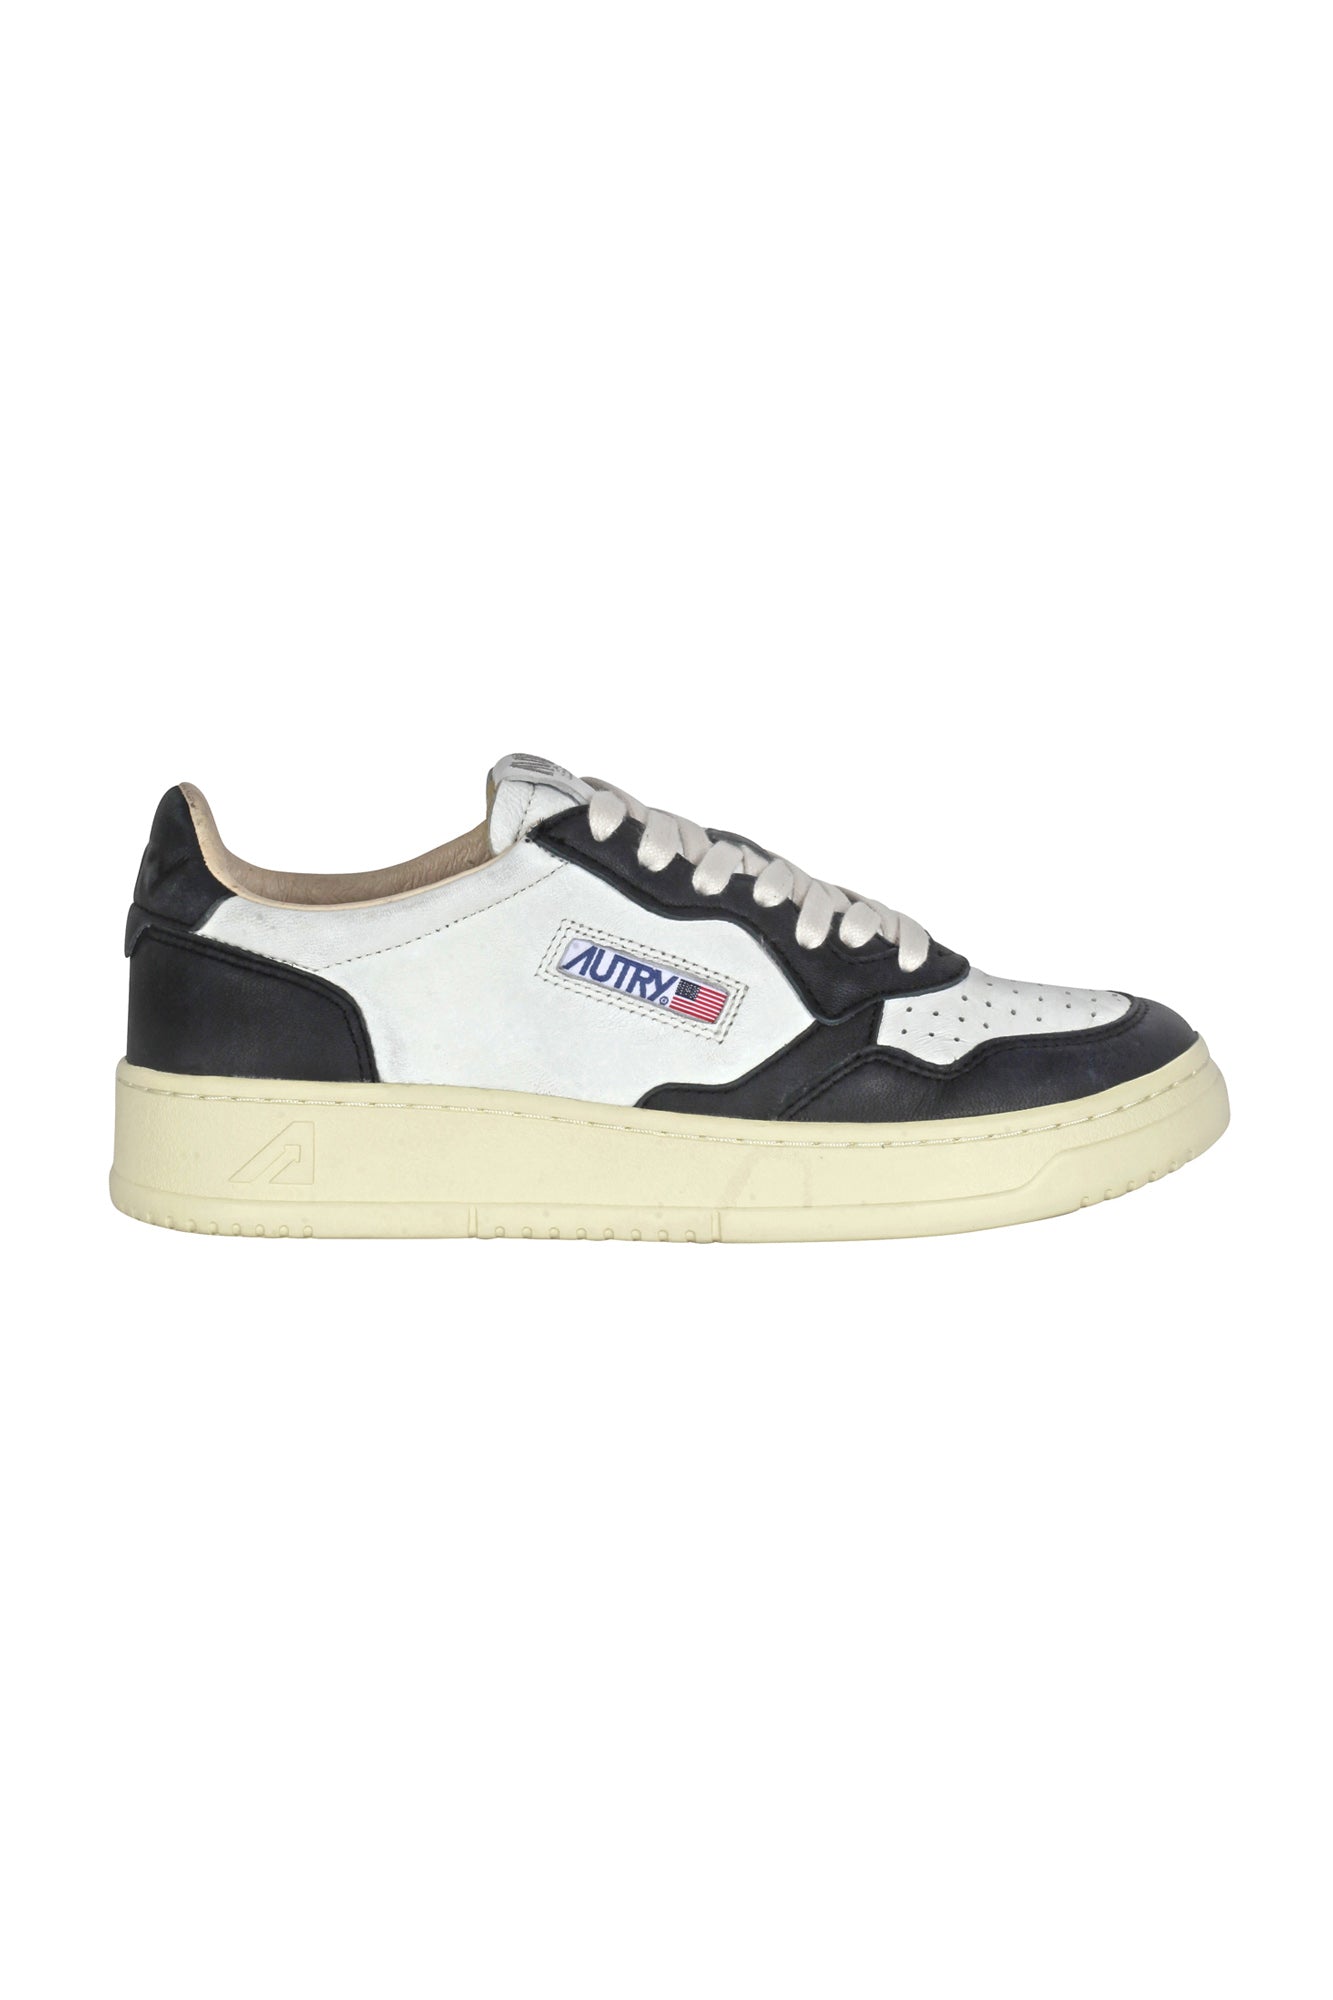 Autry - Sneakers - 430021 - Bianco/Nero